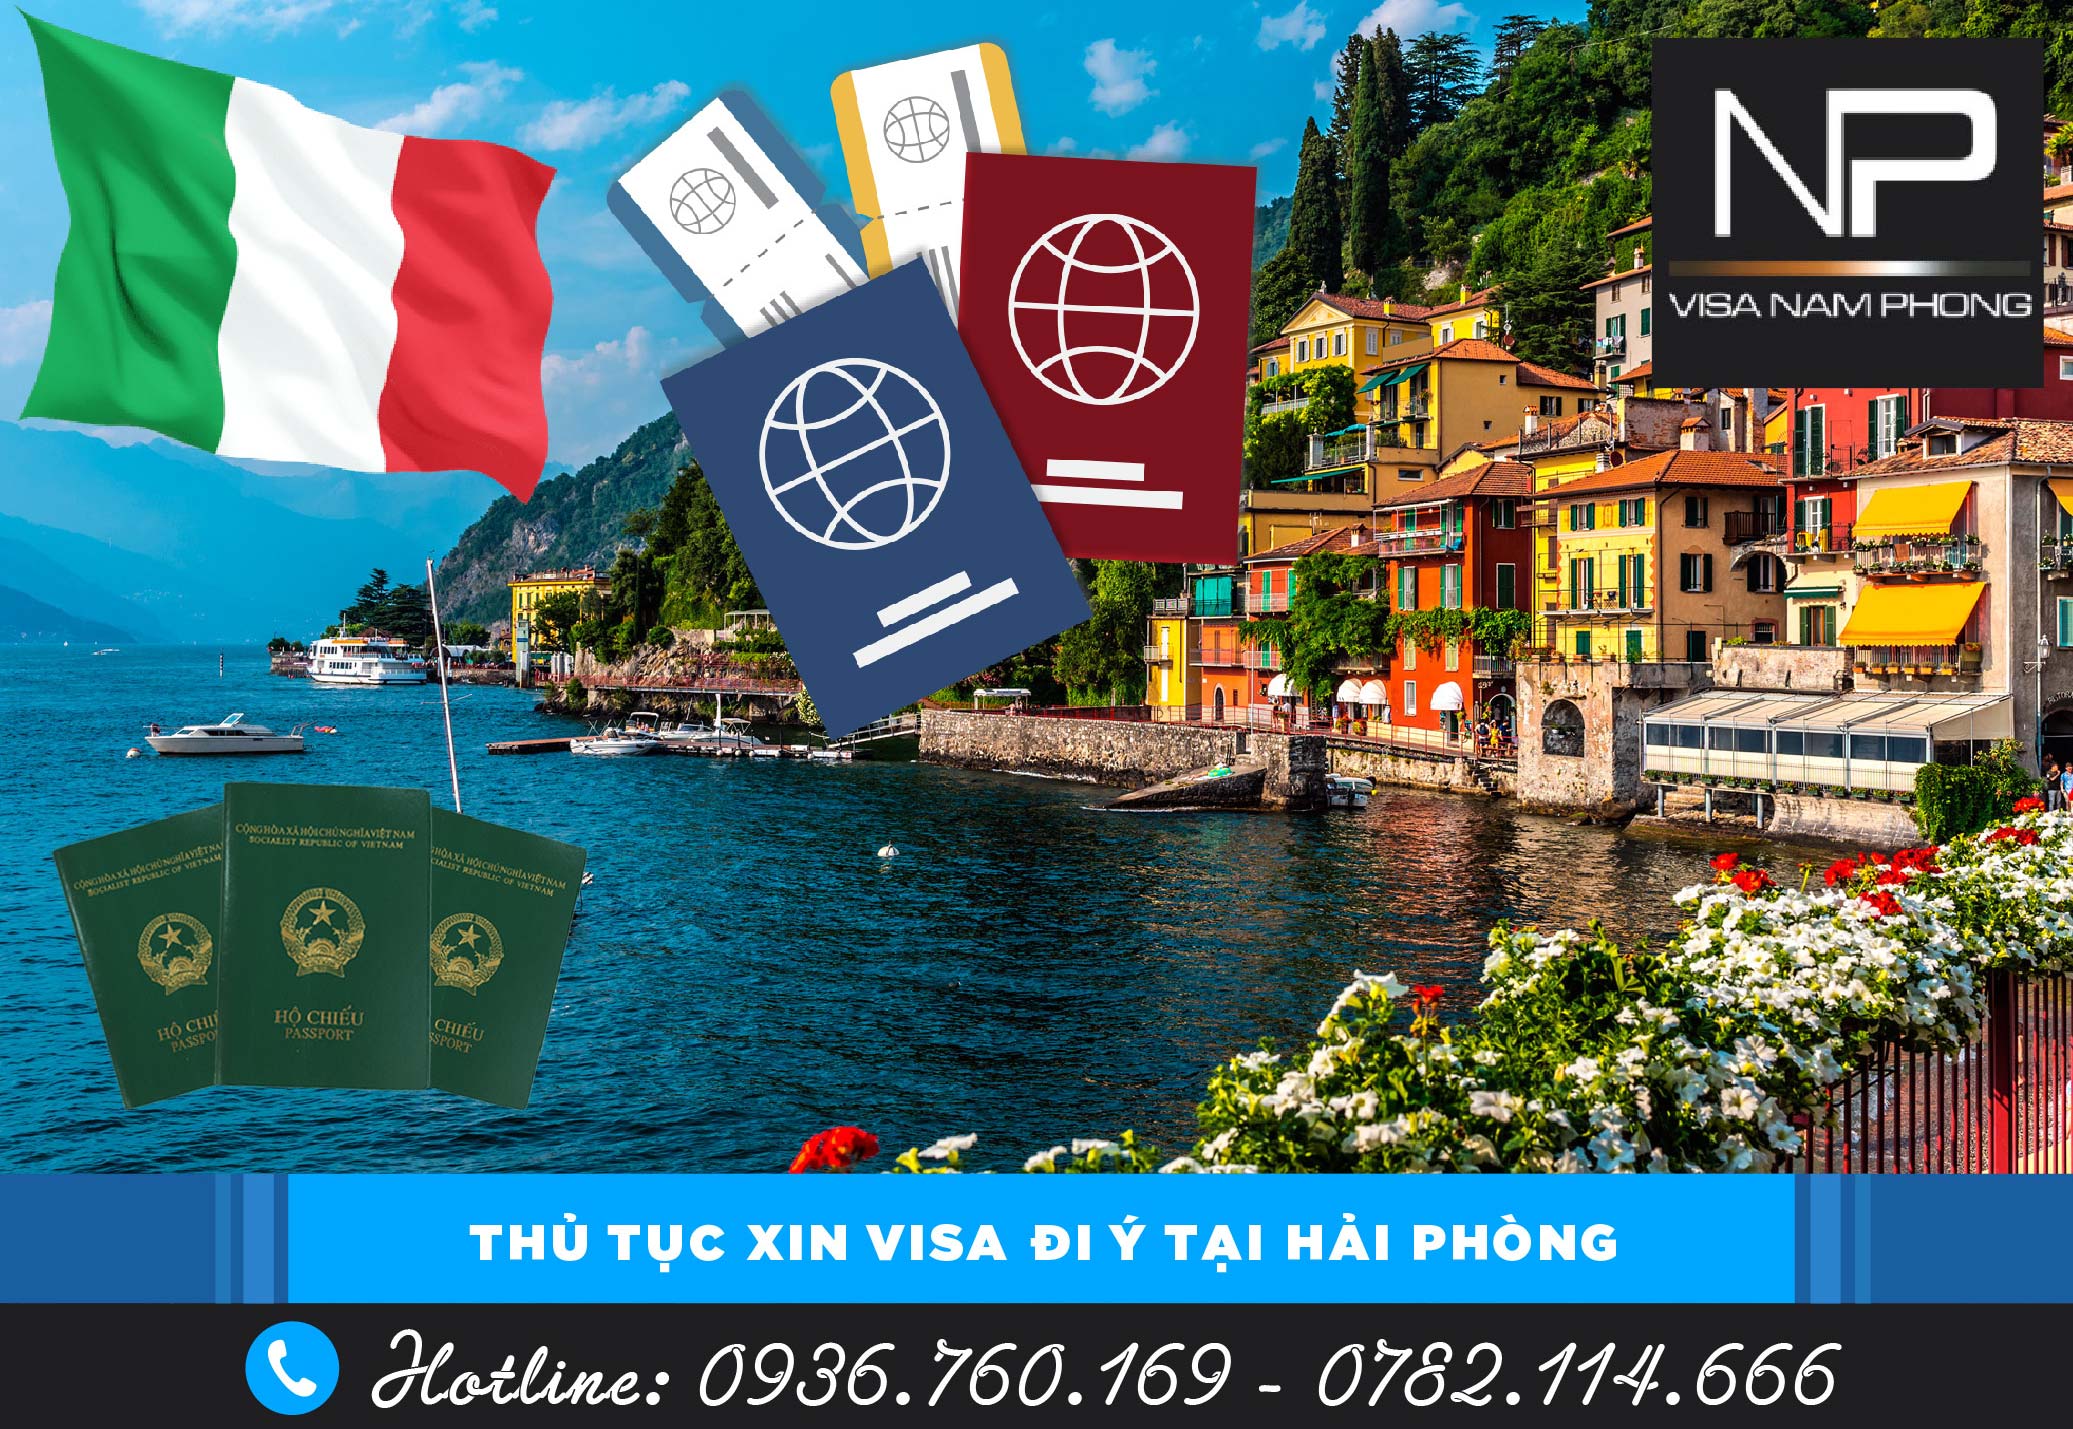 Thủ tục xin visa đi Ý tại Hải Phòng